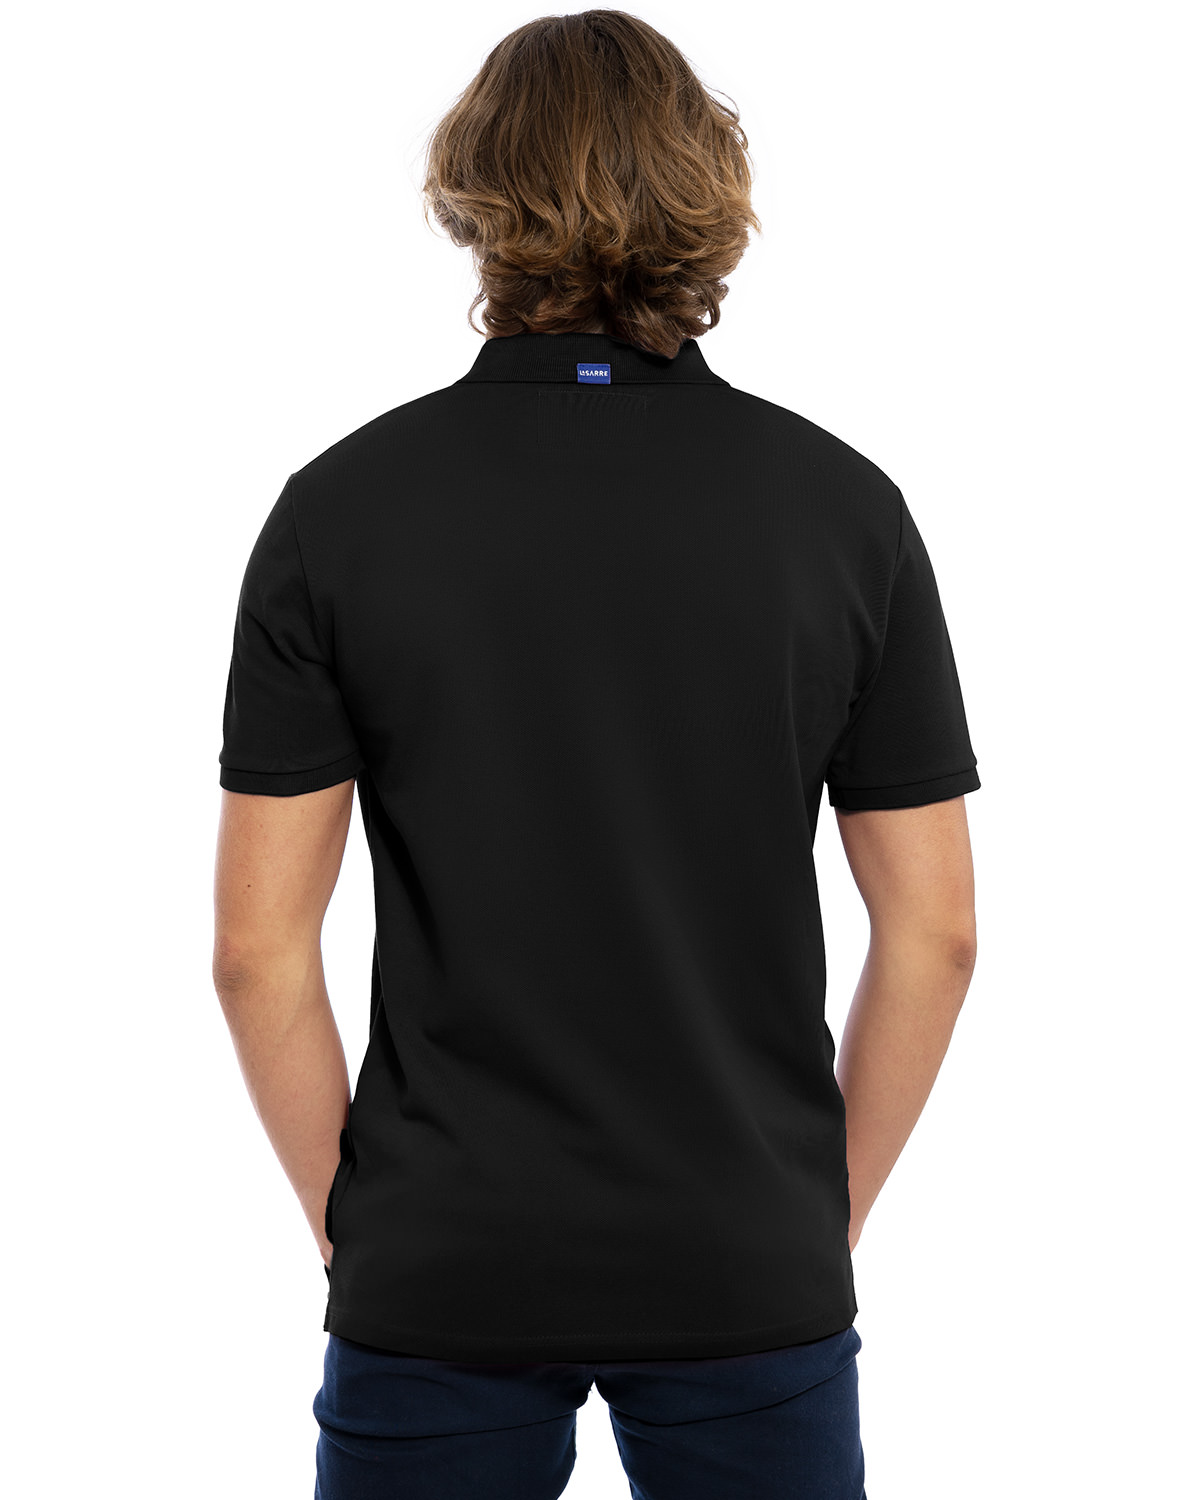 Rücken-Ansicht des hochwertig bestickten Herren Polo Shirt „FELIX“ in der Farbe Bordeaux von der Saarland Marke Lasarre mit dem LASARRE Wappen in Blau, Weiß, Rot auf der linken Brust und dem blauen LASARRE Markenzeichen am Saum